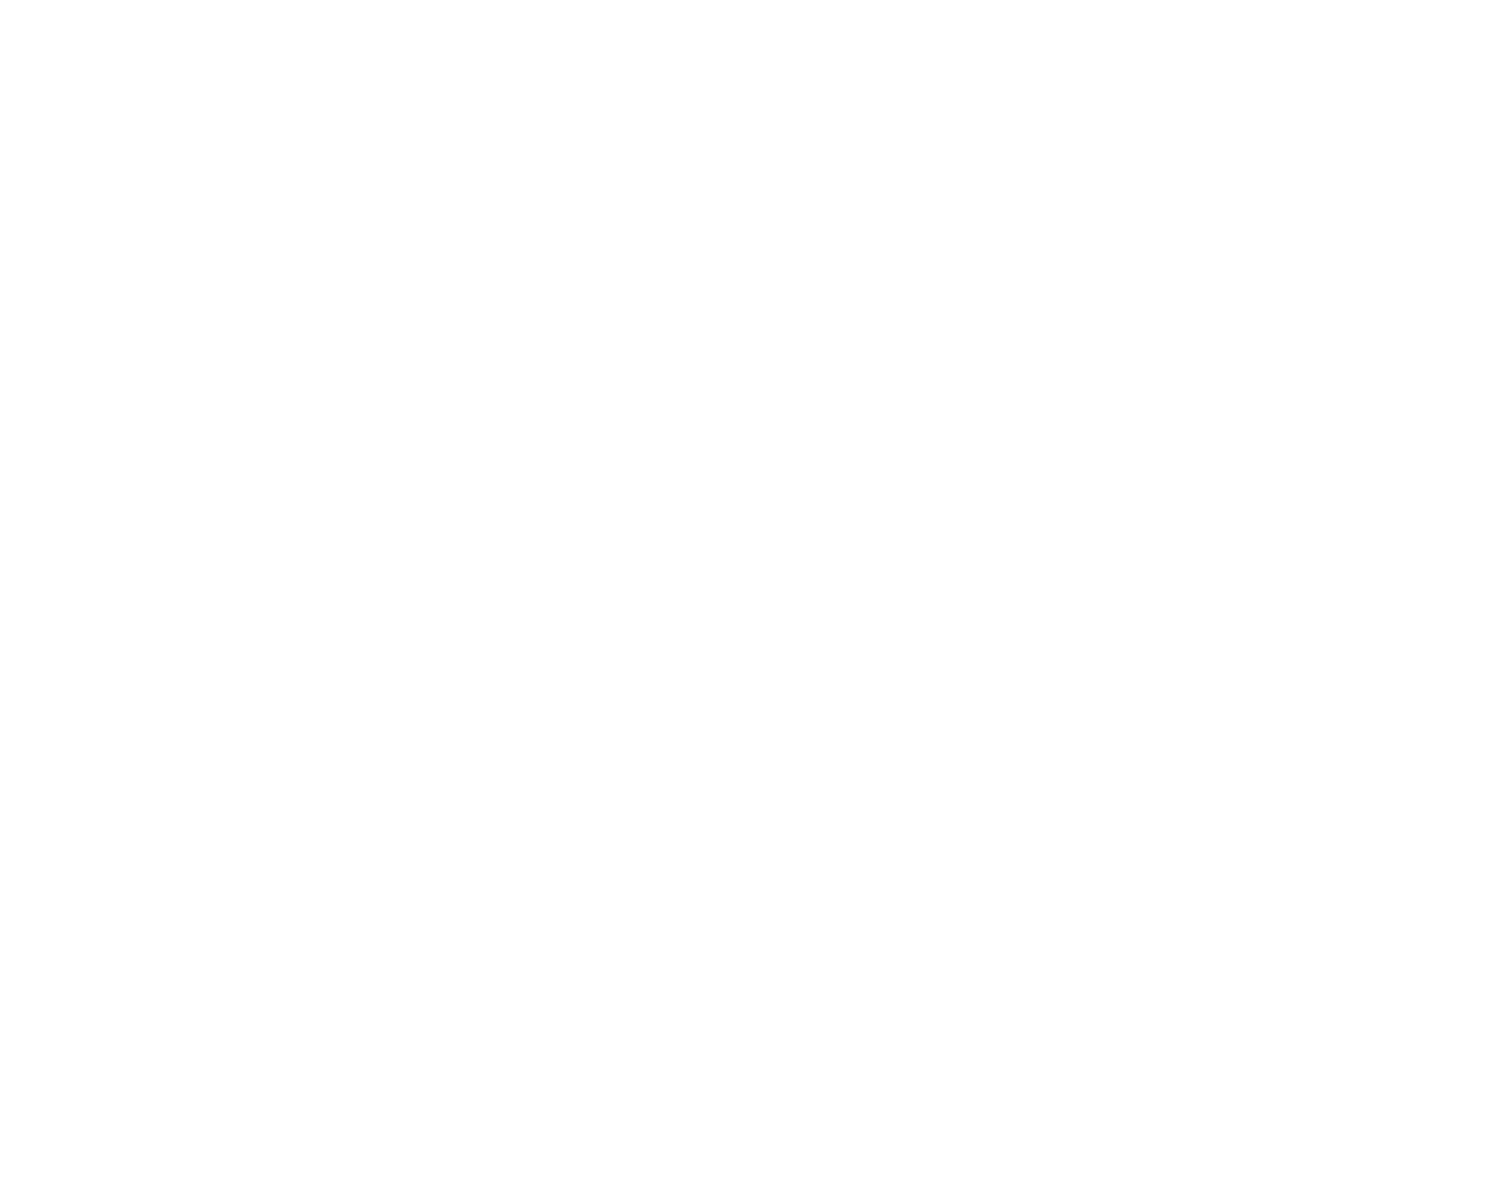 Megan Weaver